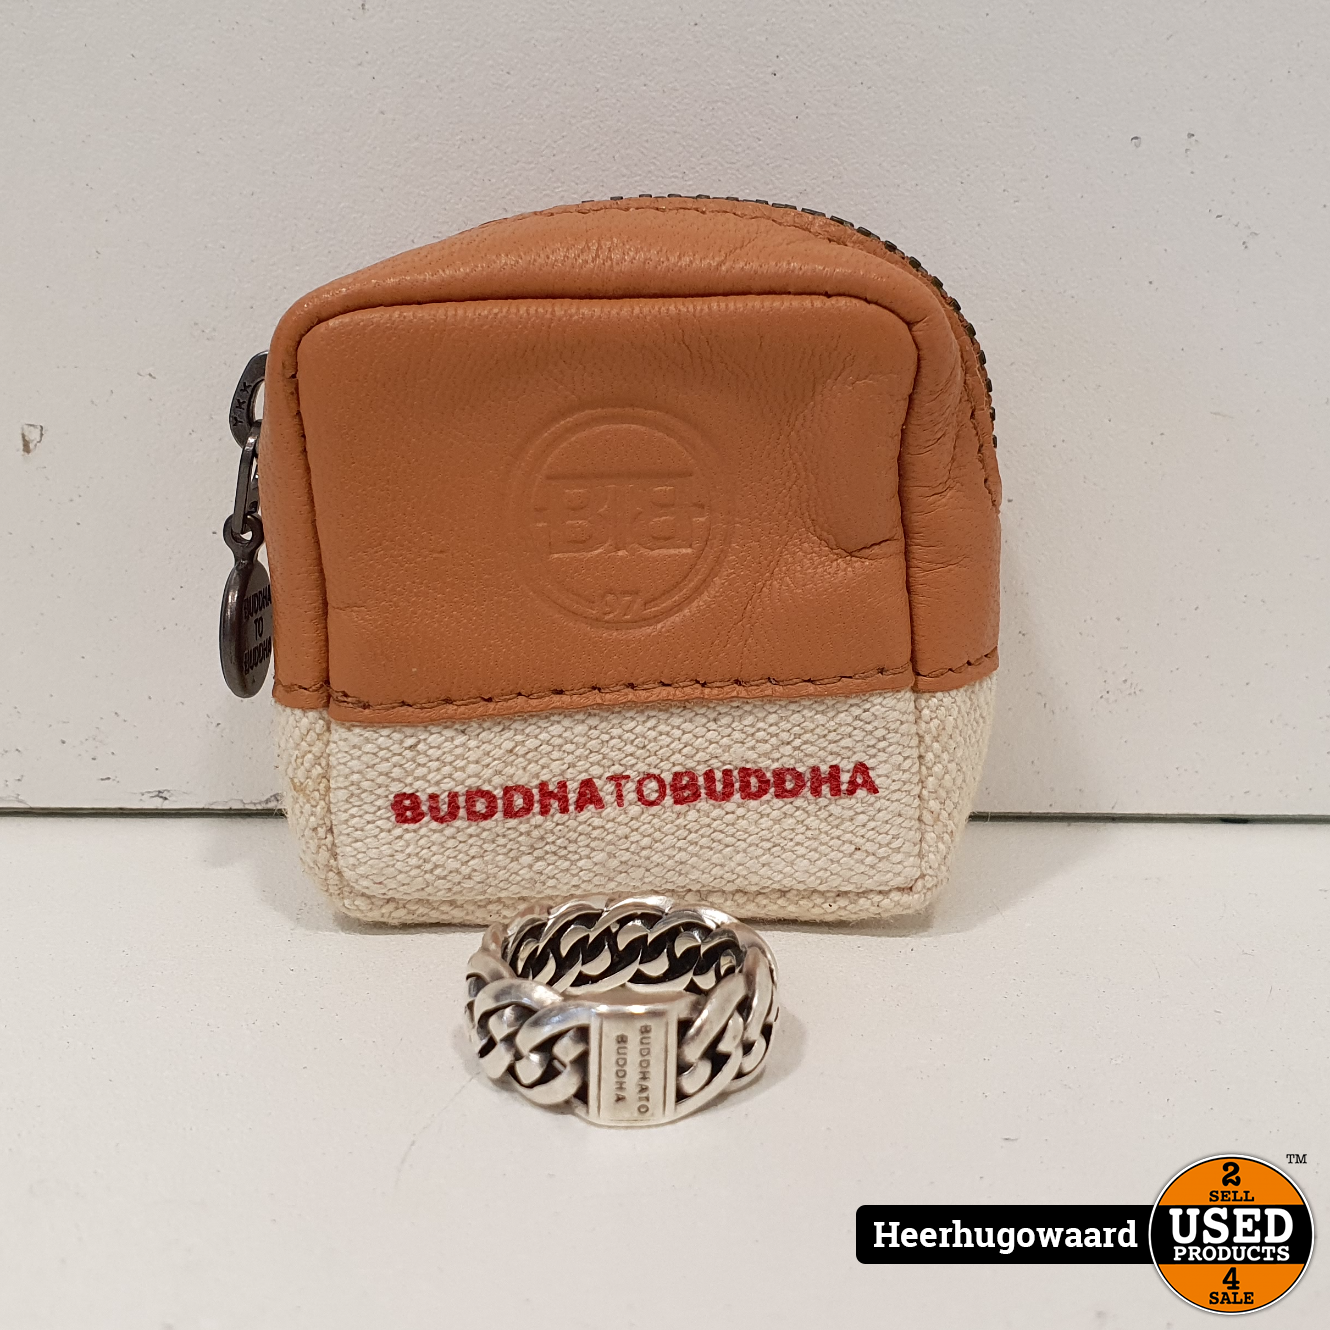 Zelfgenoegzaamheid Losjes Waarschijnlijk Buddha to Buddha Nathalie Ring Maat 17 incl. Pouch in Nette Staat - Used  Products Heerhugowaard